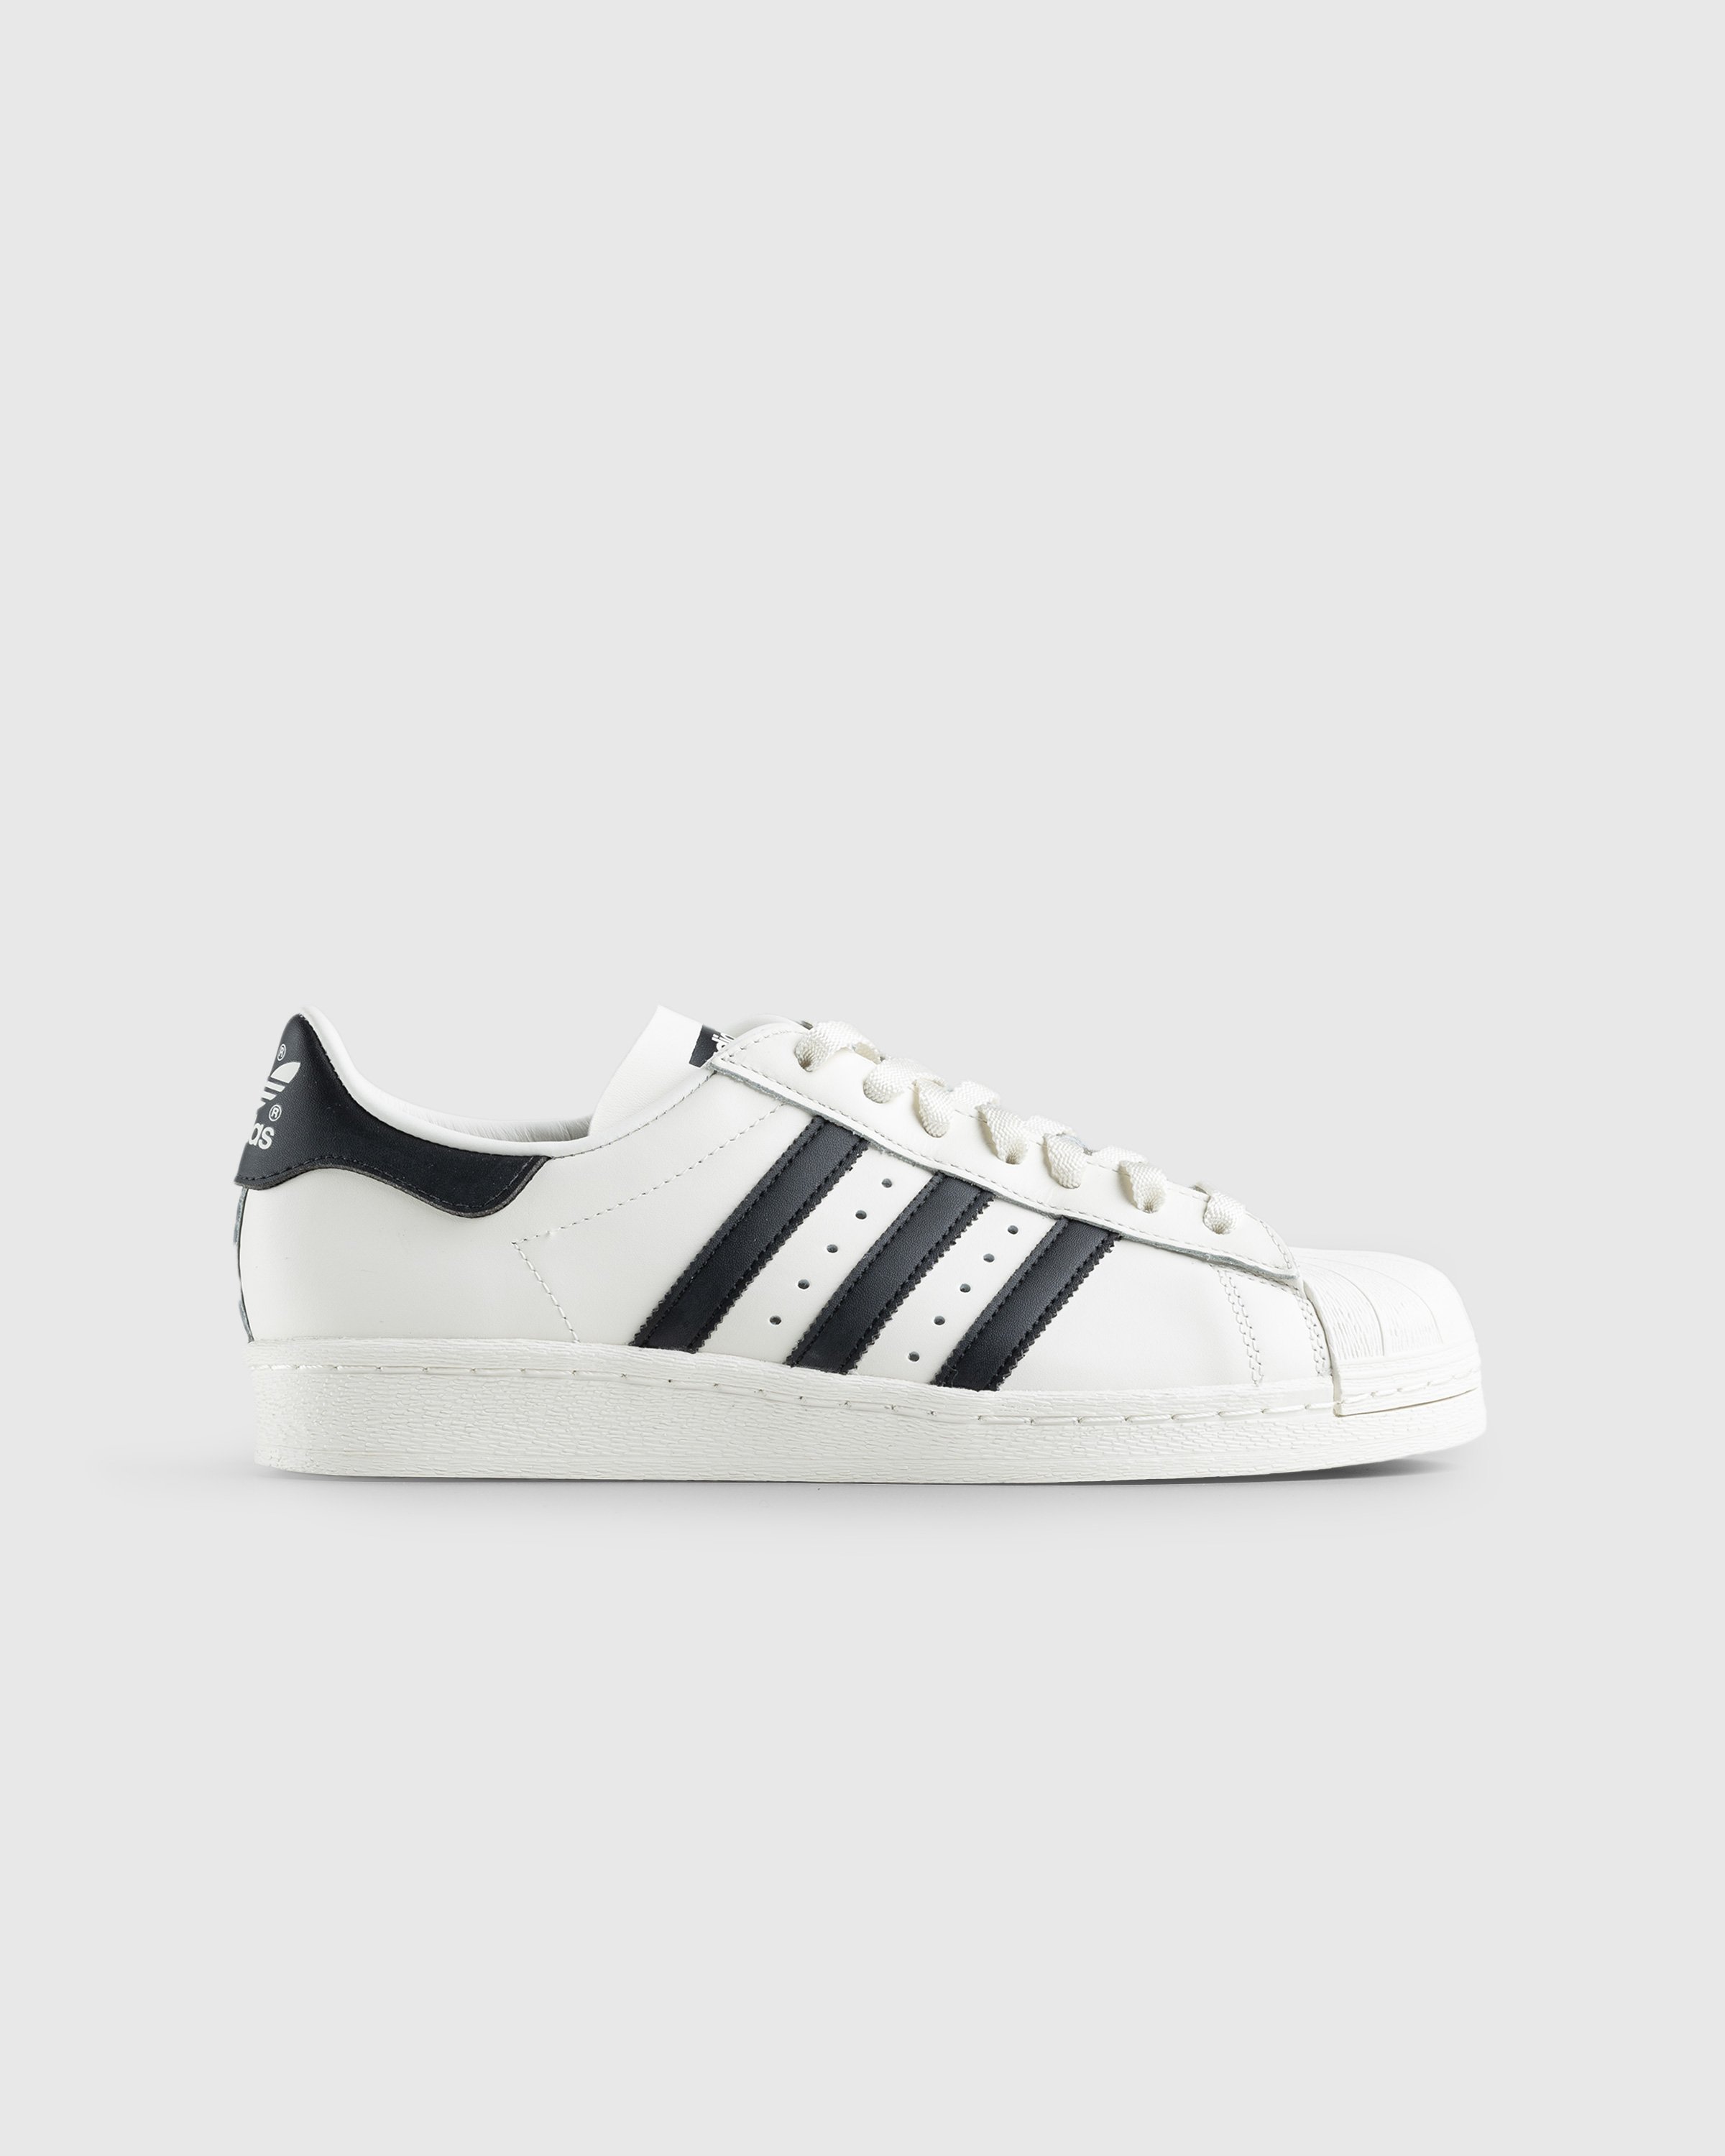 Adidas - Superstar 82 White/Black - Footwear - White - Image 1